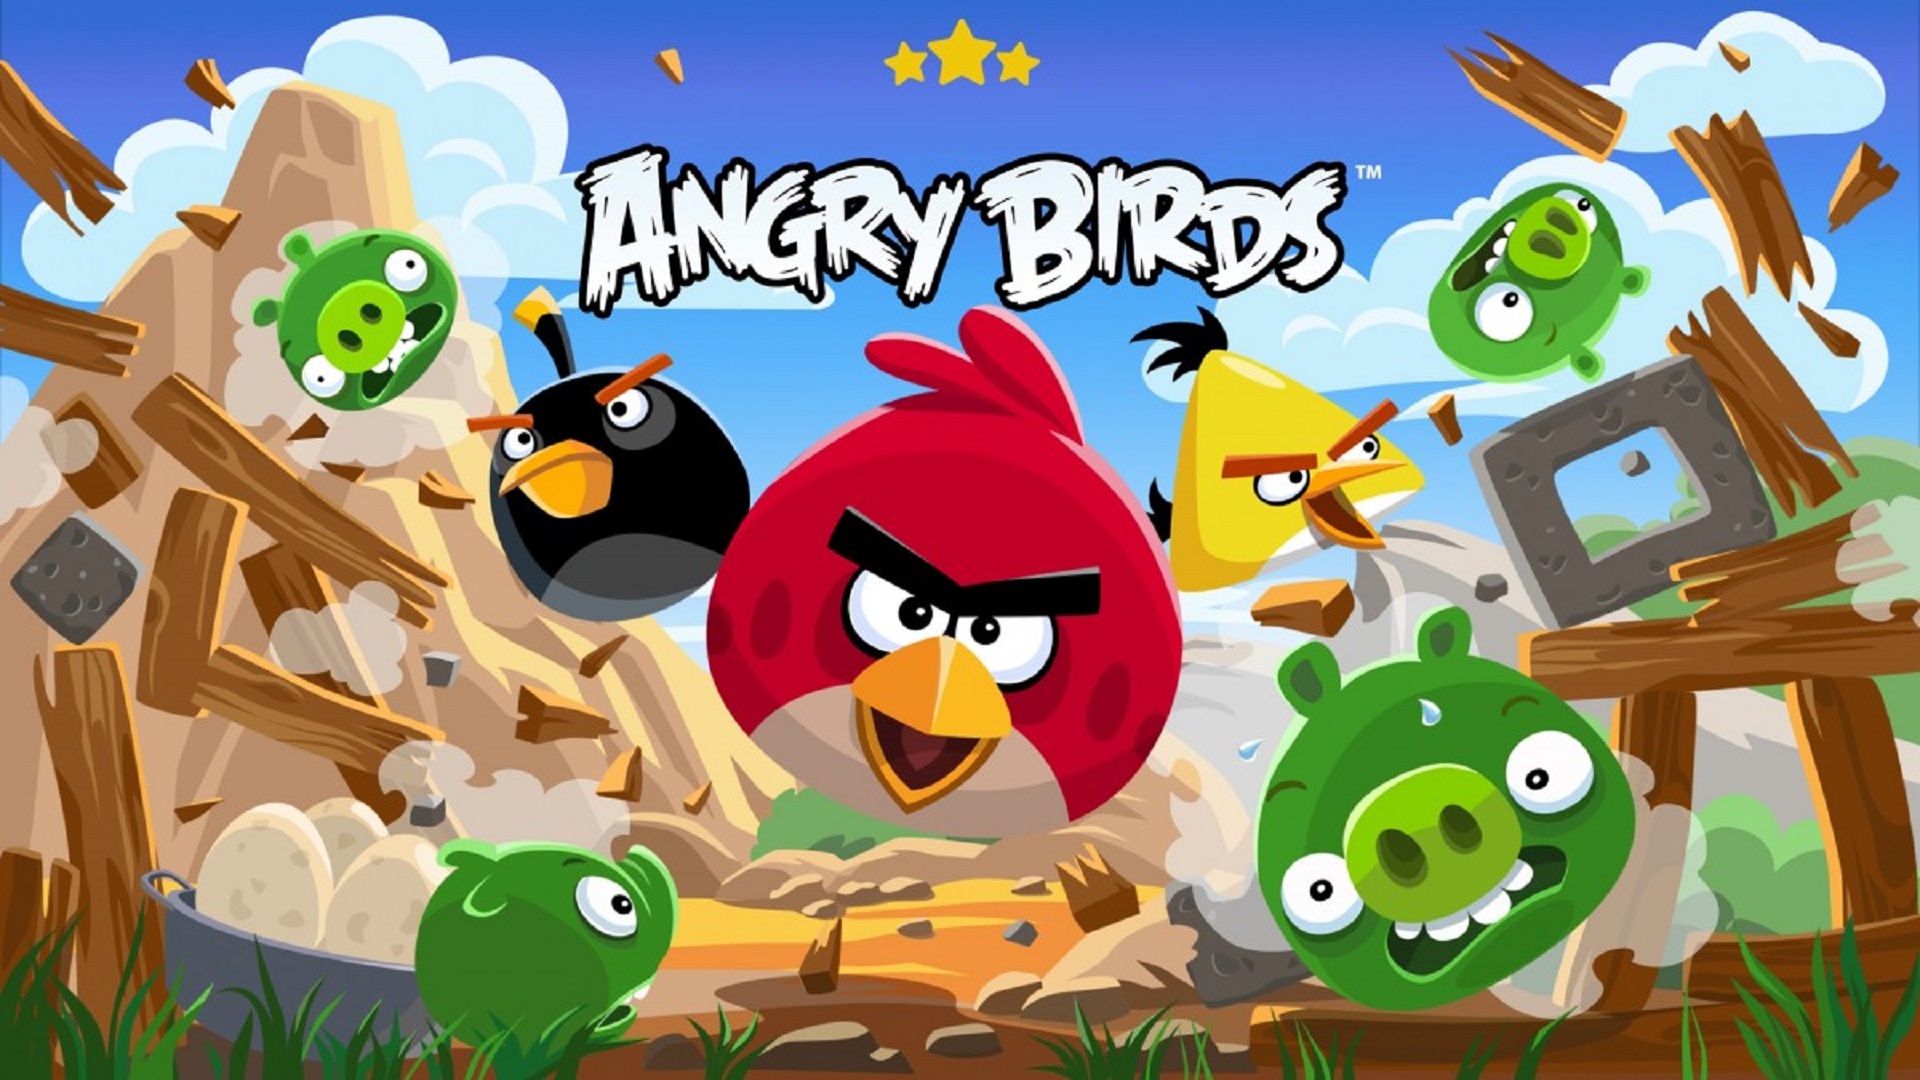 Sega เตรียมซื้อ Rovio ผู้พัฒนา Angry Birds  มูลค่า 1 พันล้านเหรียญสหรัฐฯ